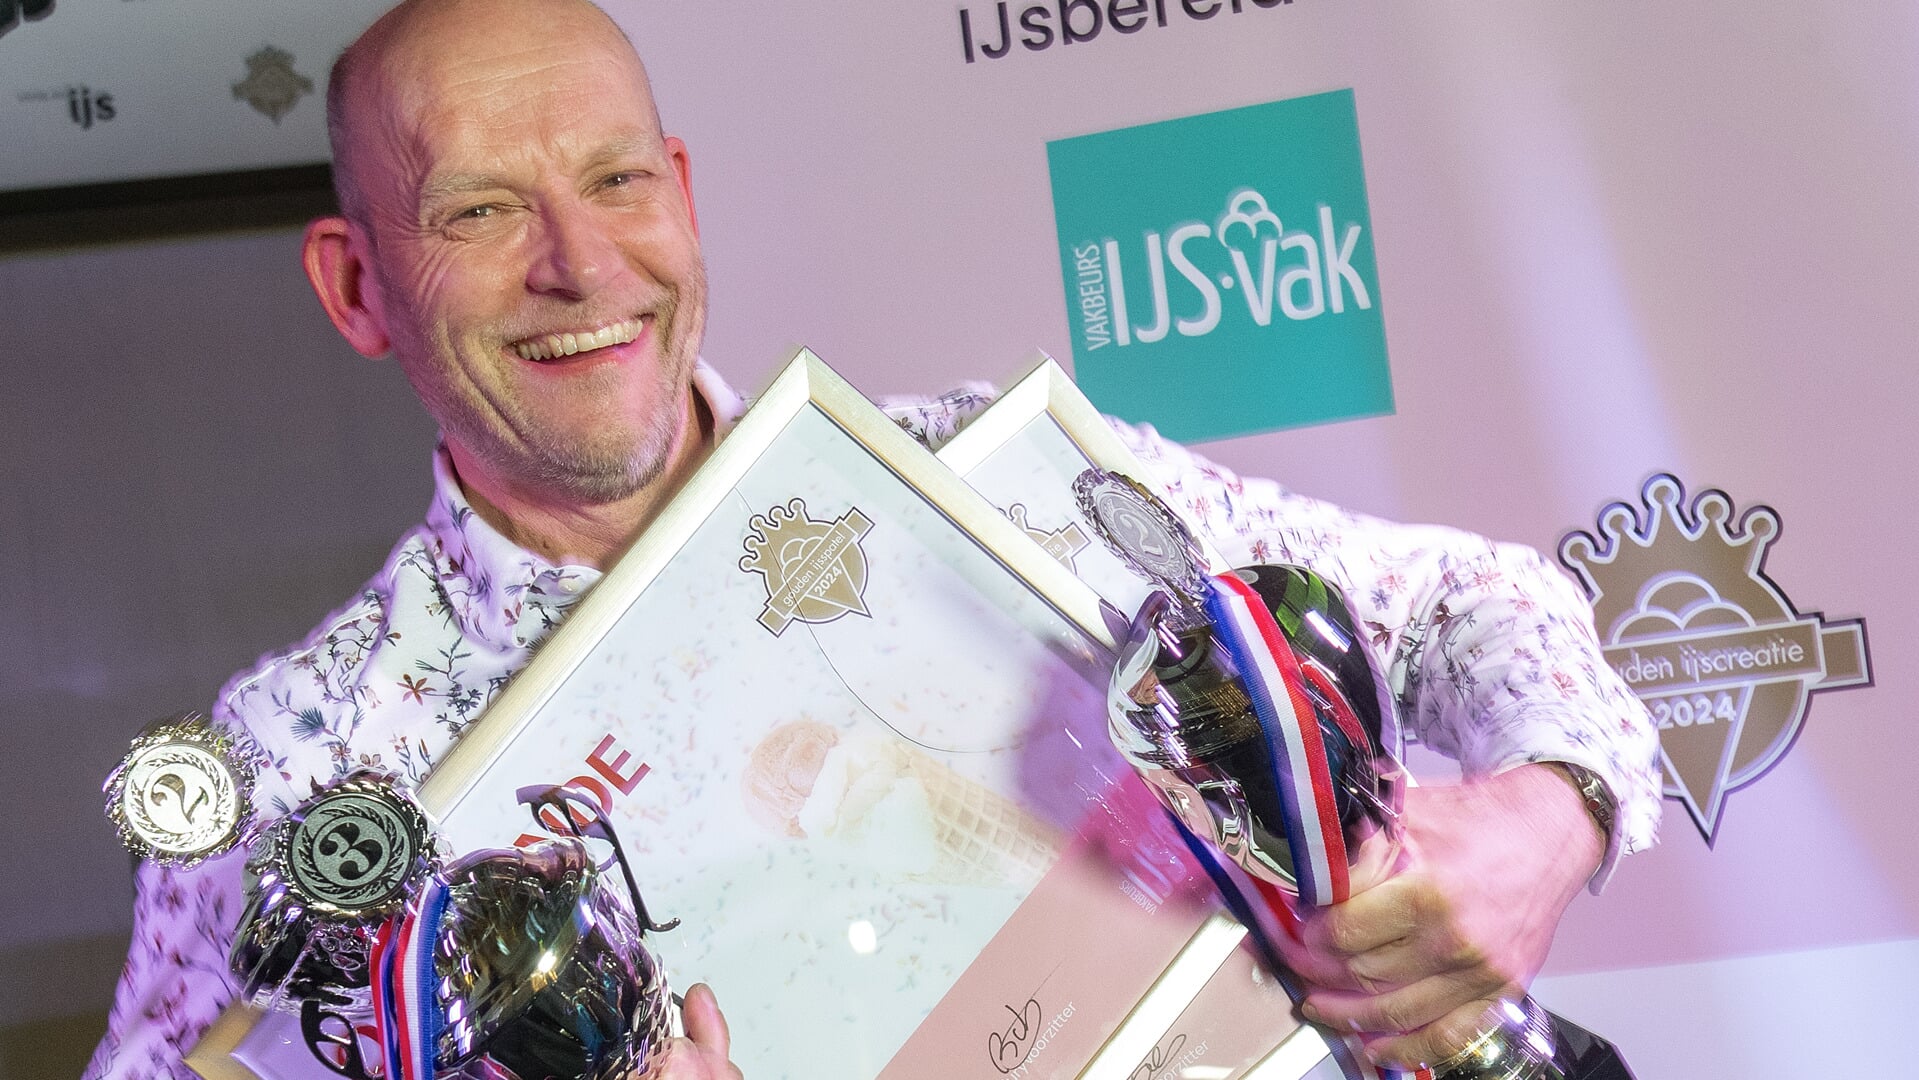 Mark van Gaal heeft twee prijzen gewonnen en is dubbel genomineerd voor de titel 'IJssalon van het Jaar 2024' (Foto: Raphael Drent)